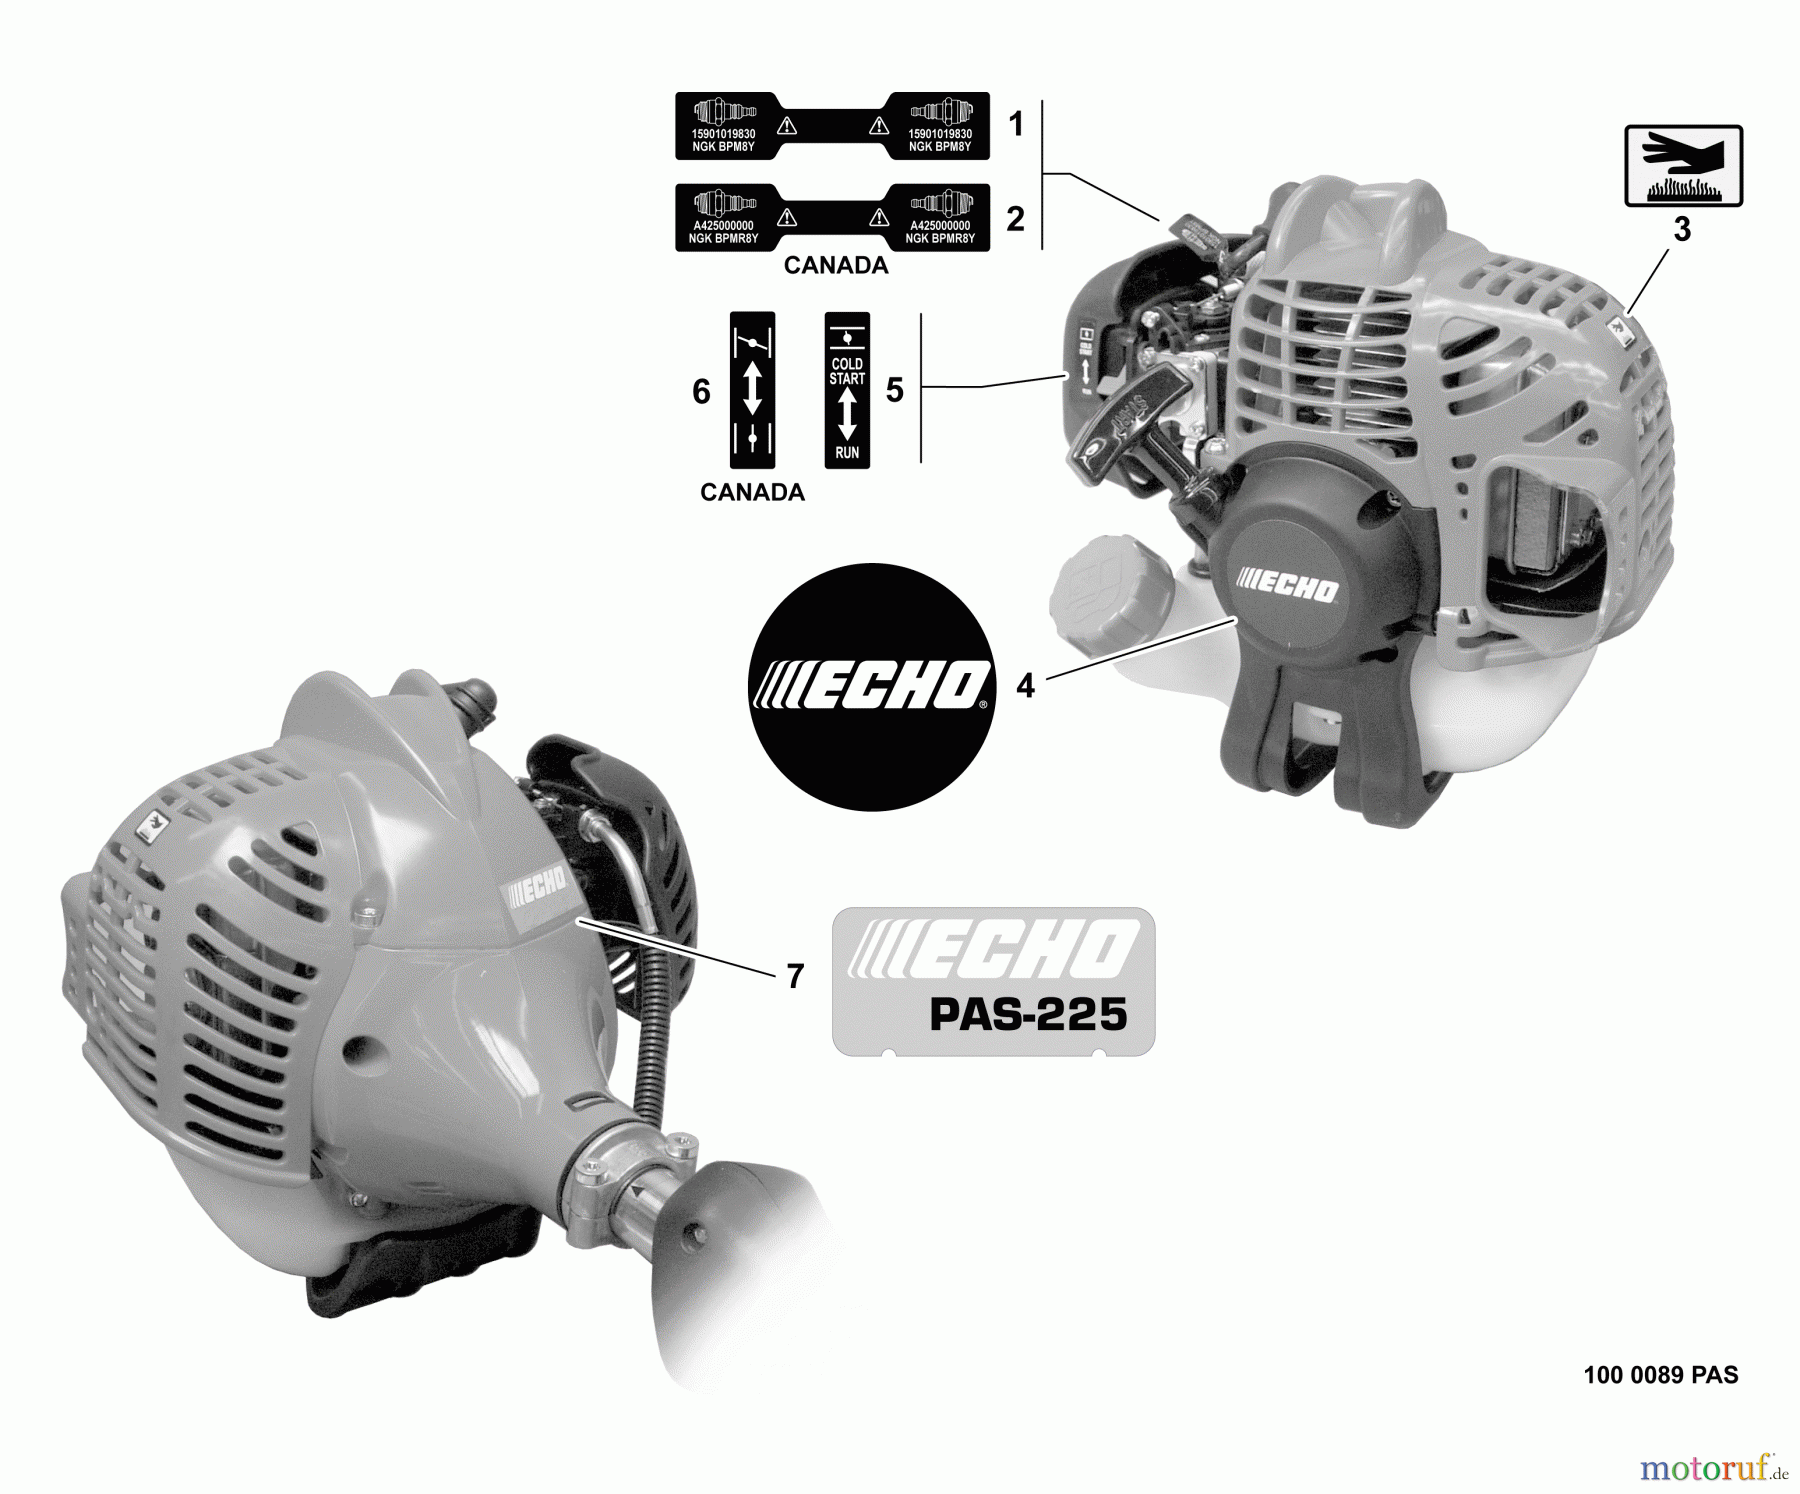  Echo Trimmer, Faden / Bürste PAS-225 - Echo Power Unit, S/N: S59511001001 - S59511003000 Labels